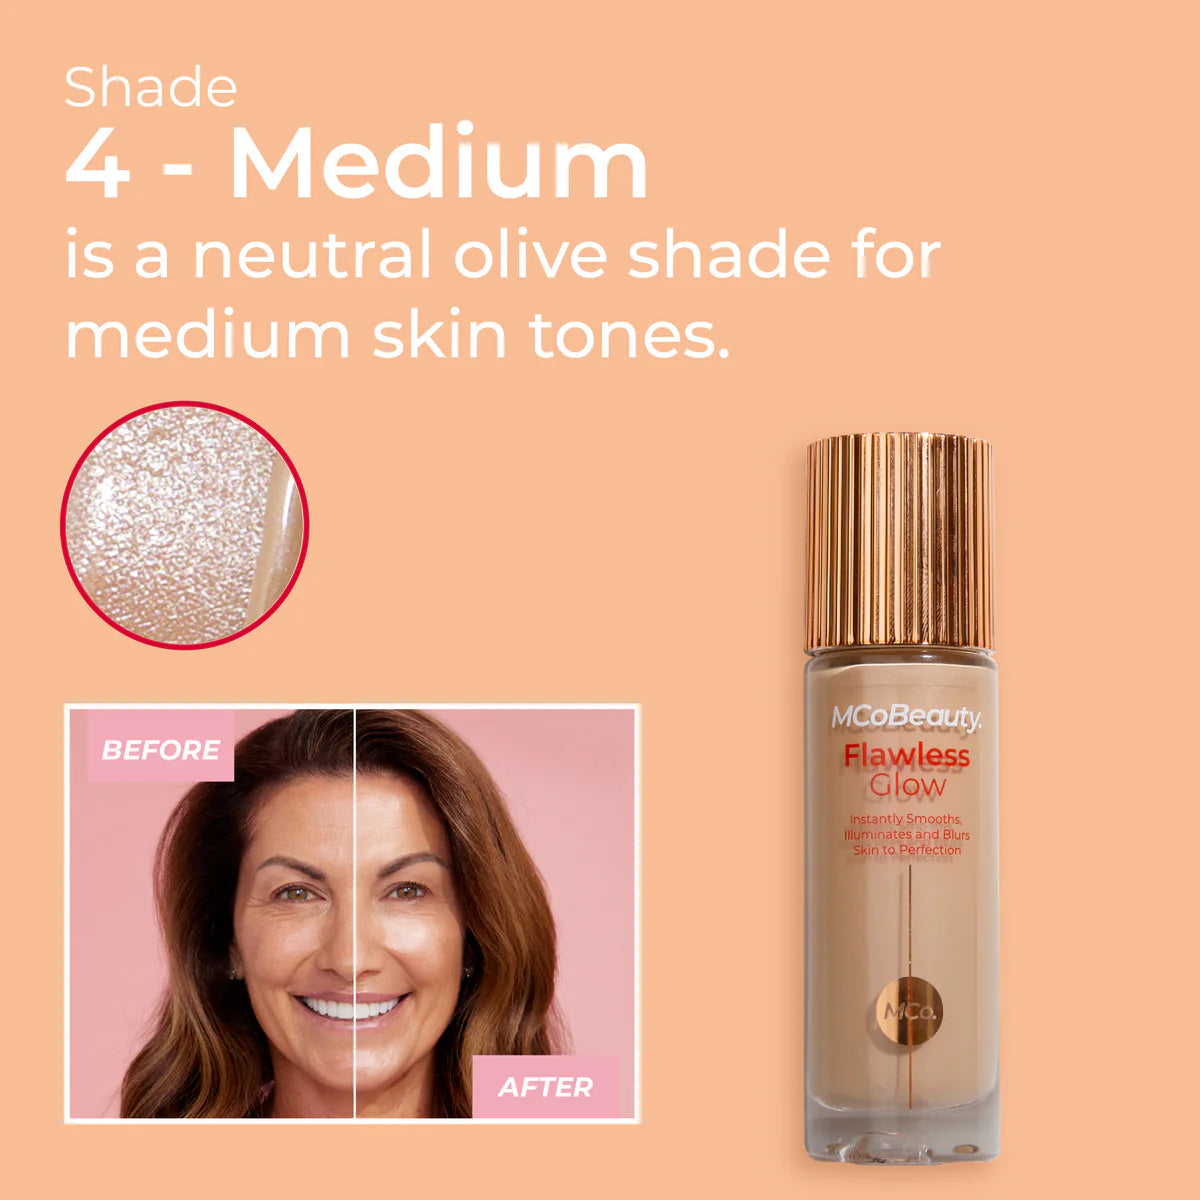 Flawless Glow Luminous Skin Filter Shade Medium